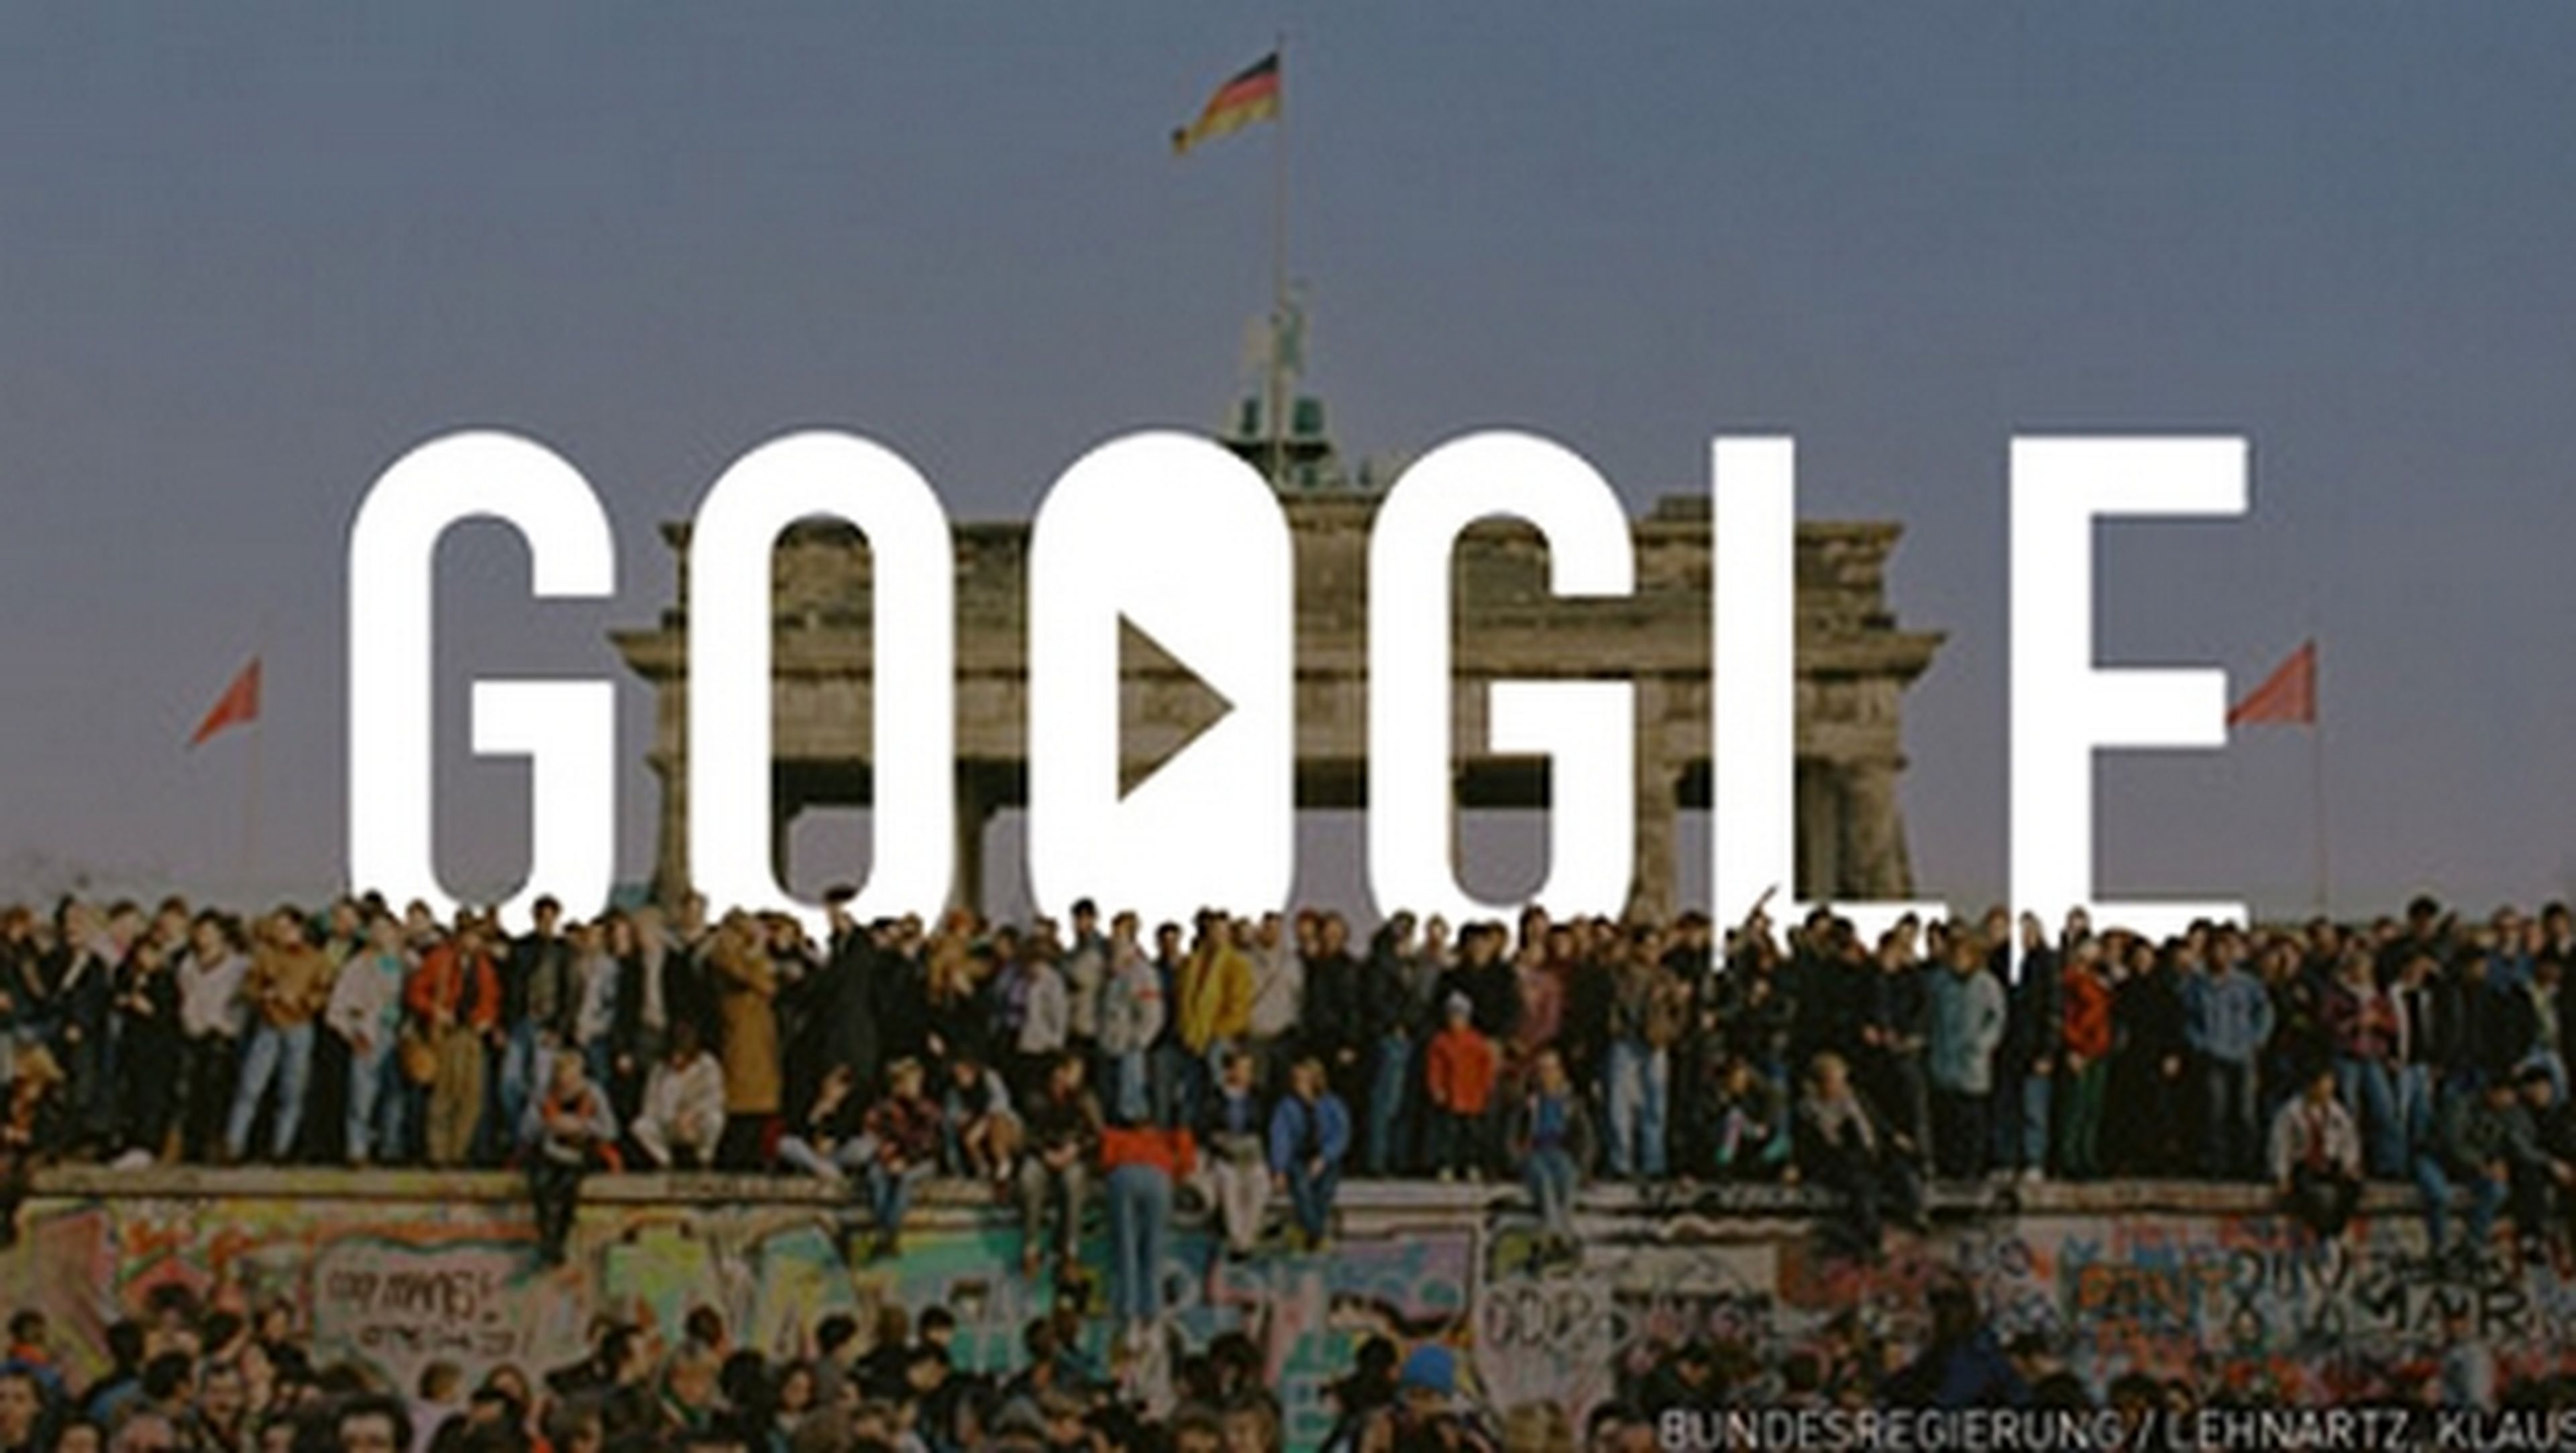 Google celebra el 25 Aniversario de la Caída del Muro de Berlín con un emotivo doodle en vídeo.